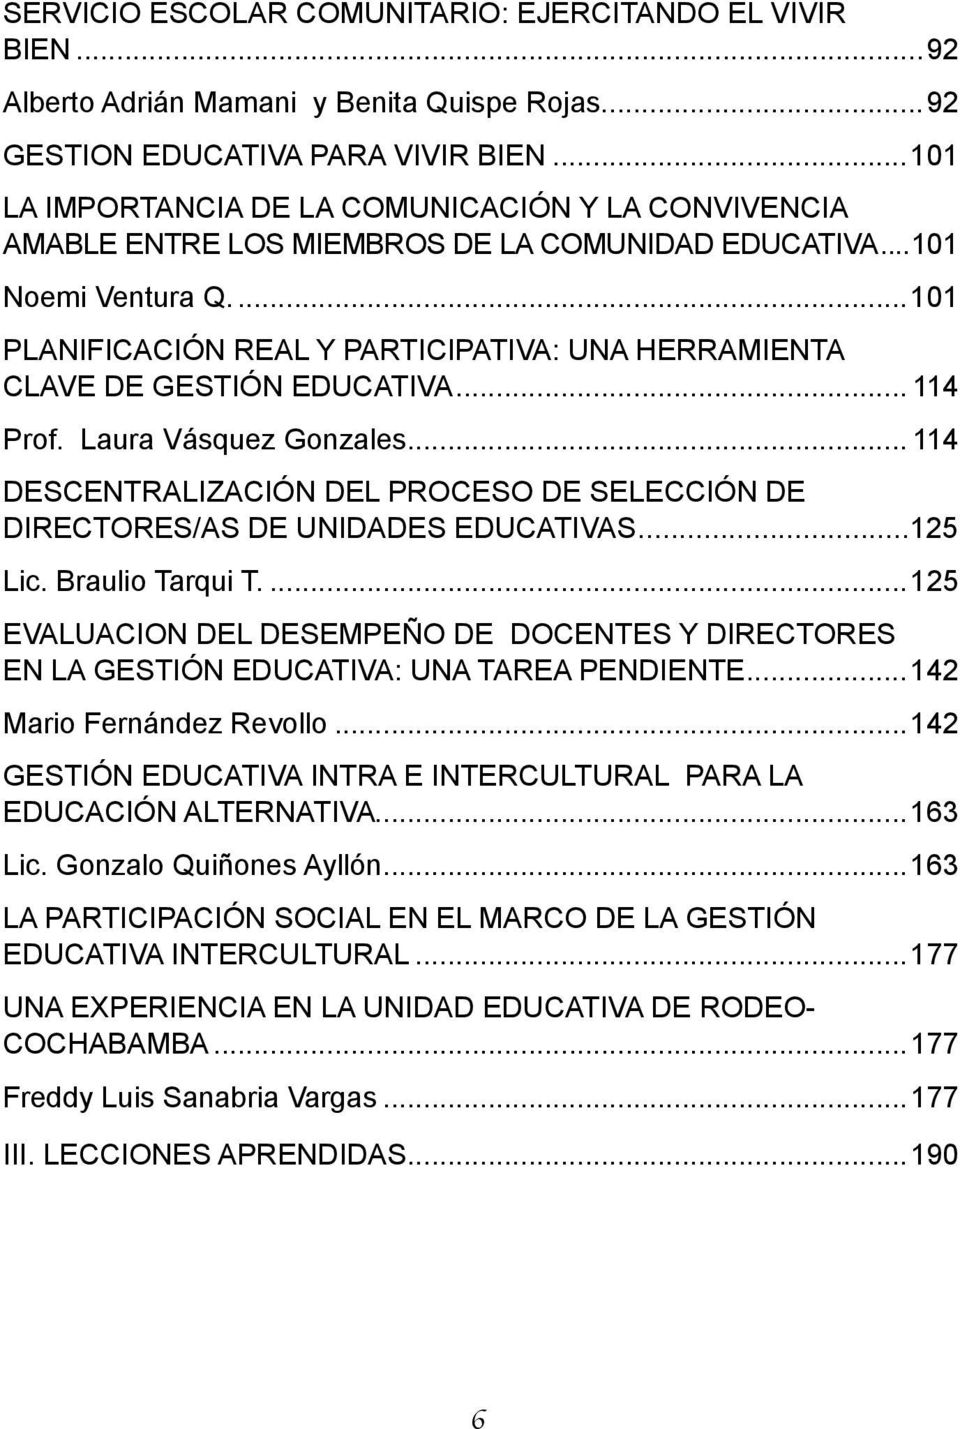 ..101 PLANIFICACIÓN REAL Y PARTICIPATIVA: UNA HERRAMIENTA CLAVE DE GESTIÓN EDUCATIVA... 114 Prof. Laura Vásquez Gonzales.